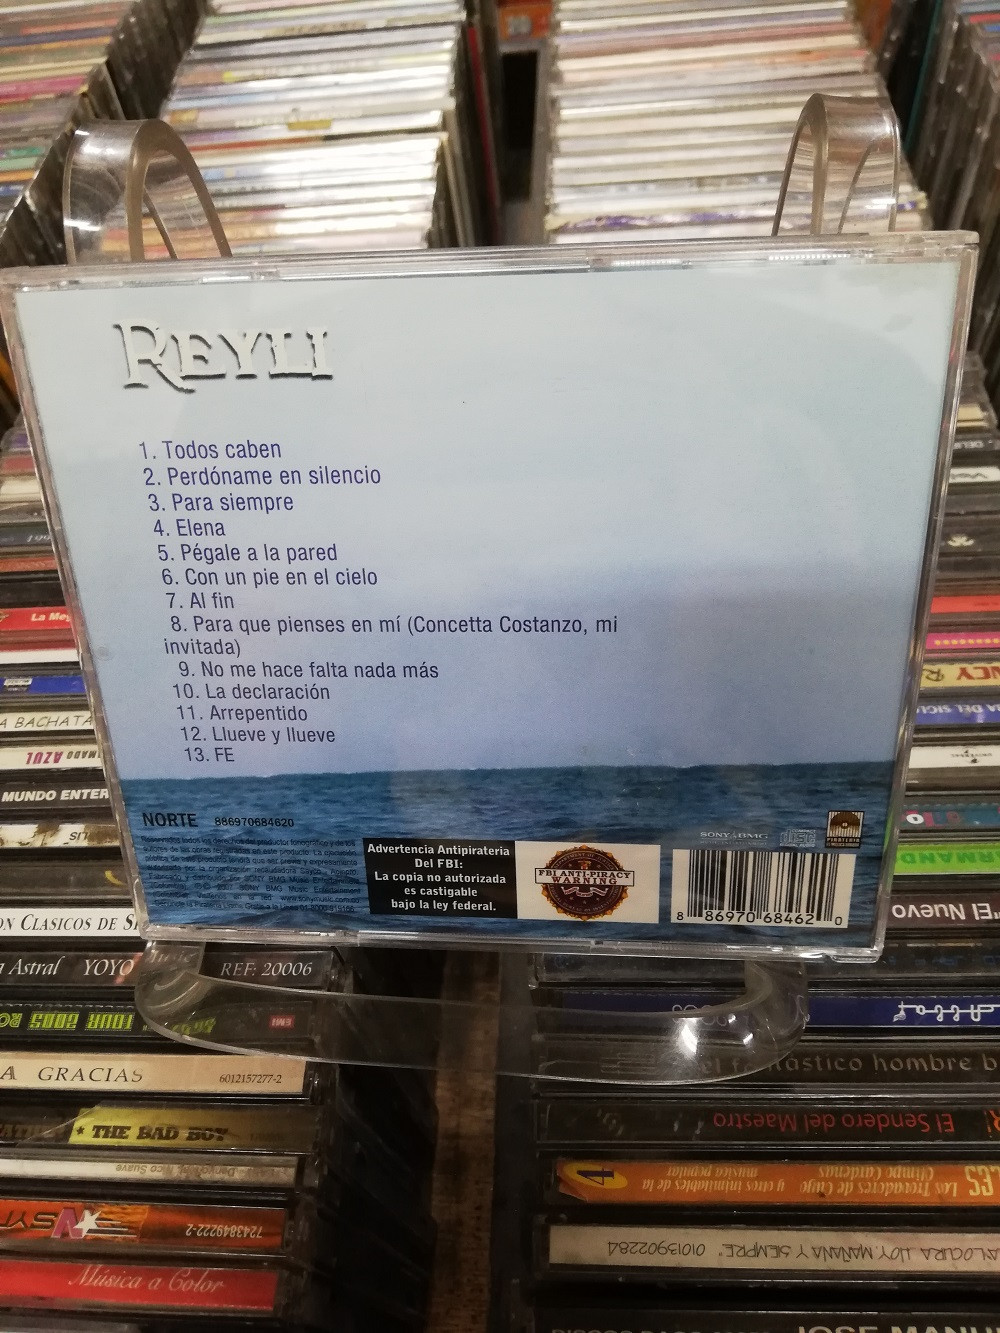 Imagen CD REYLI - FE 2